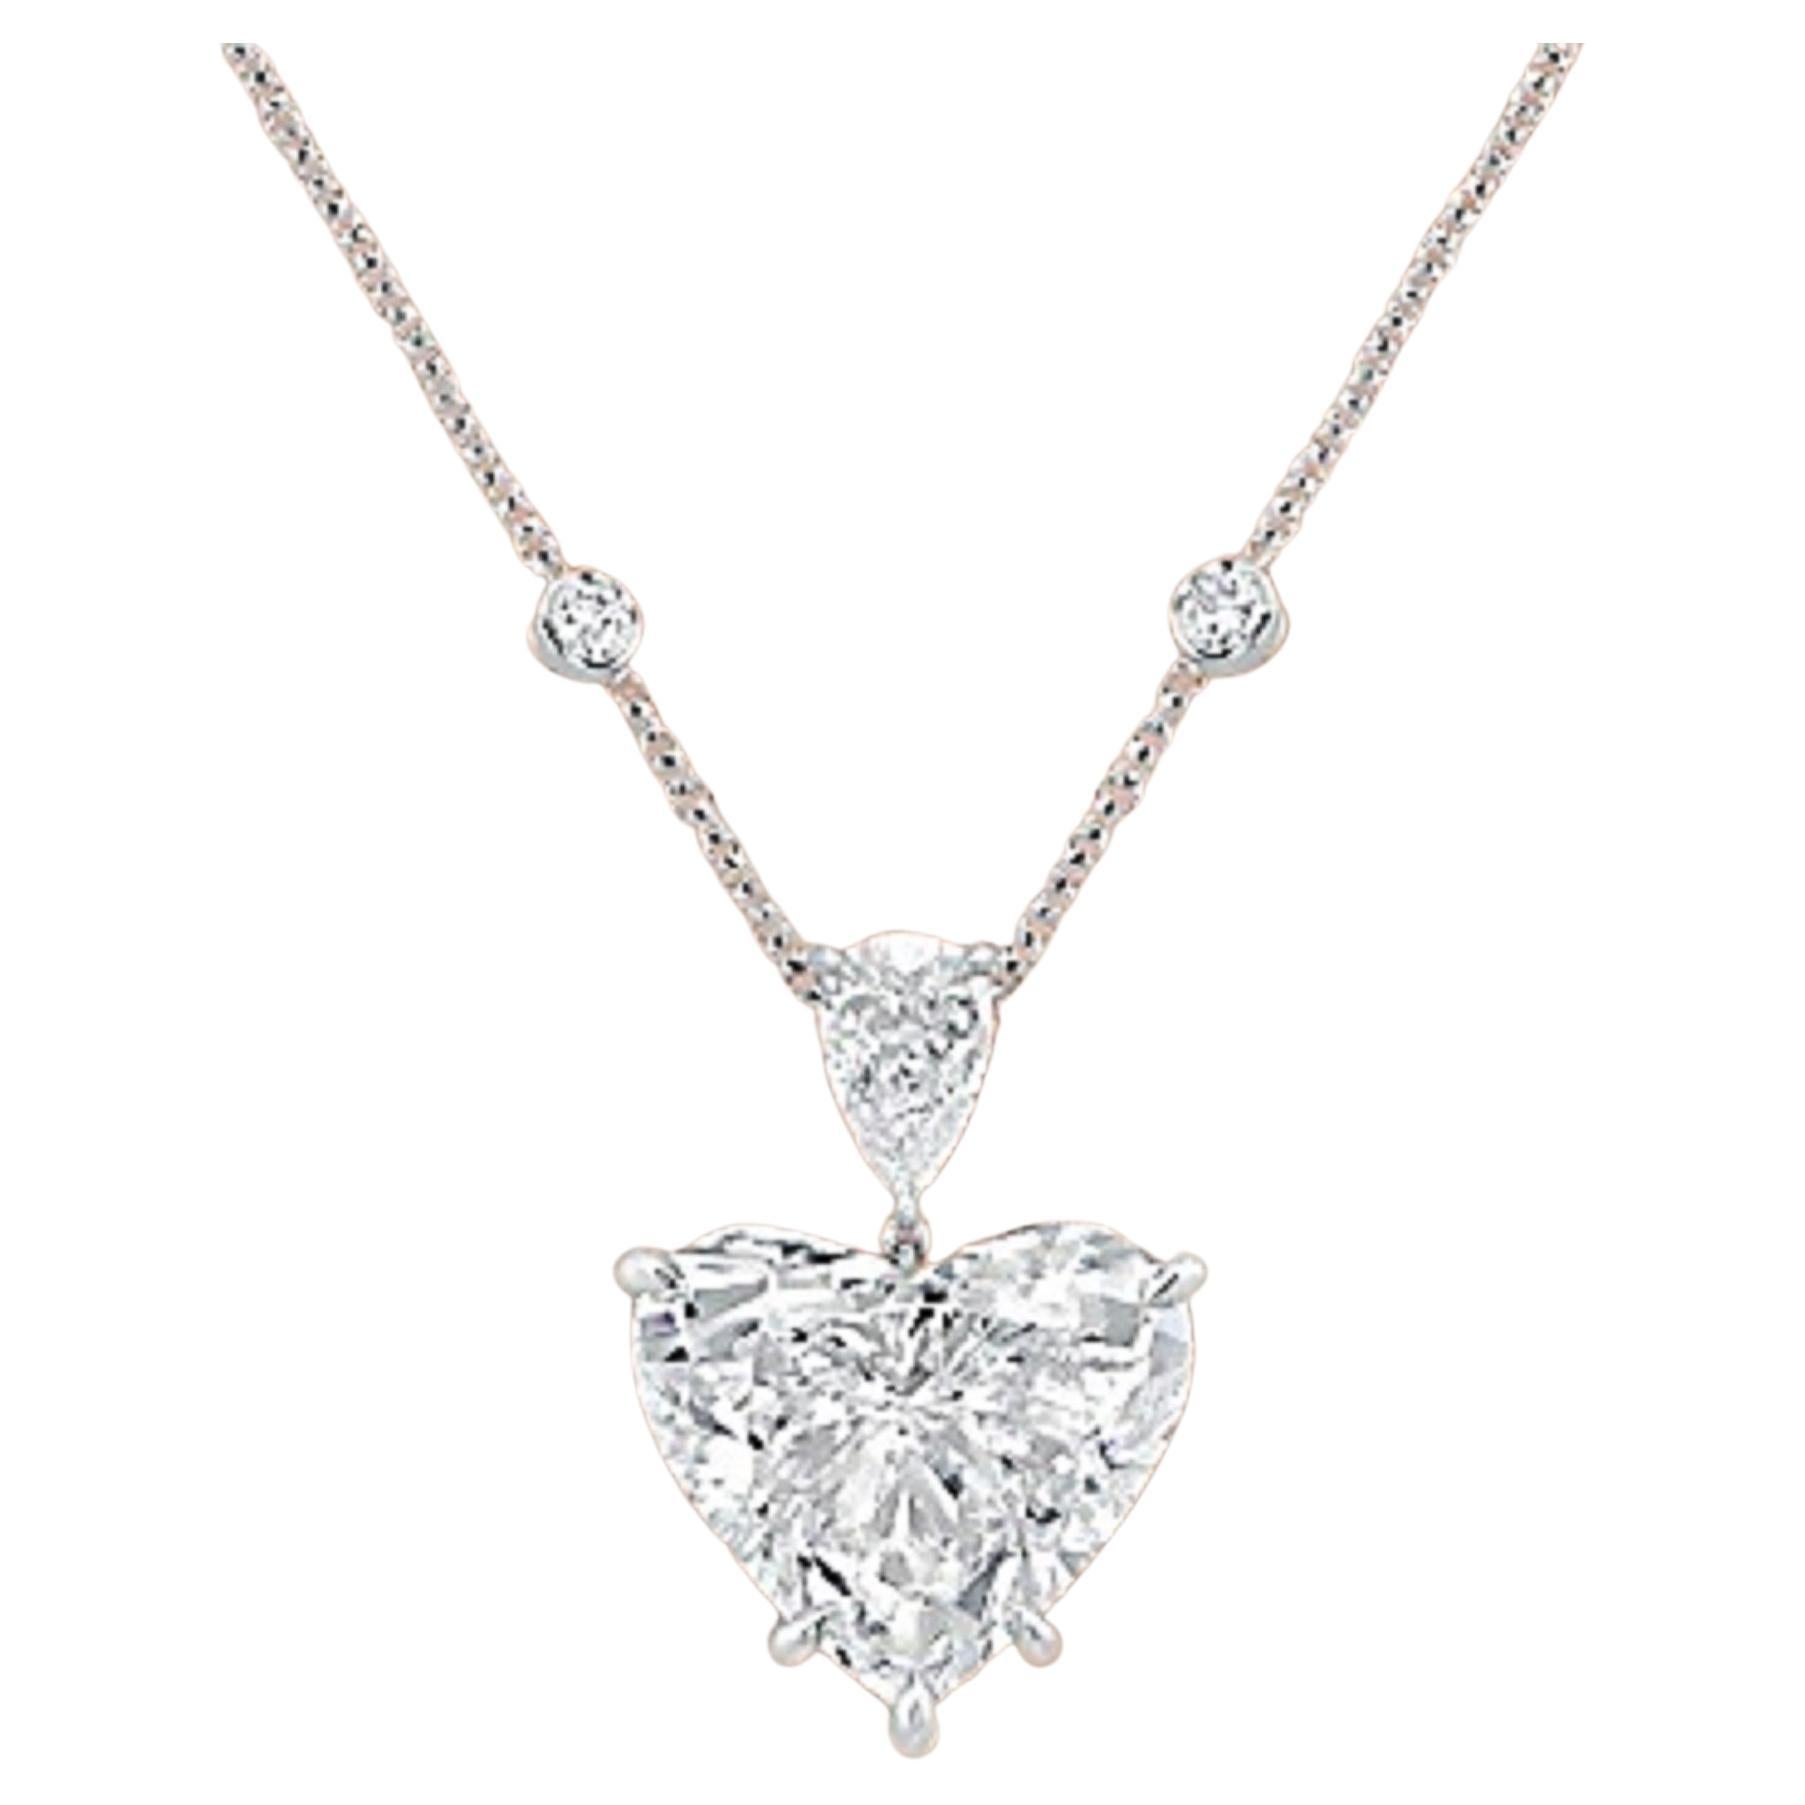 An exquisite 15 carat heart shape diamond pendant platinum necklace 
d color
flawless clarity
excellent polish
excellent symmetry
none fluorescence